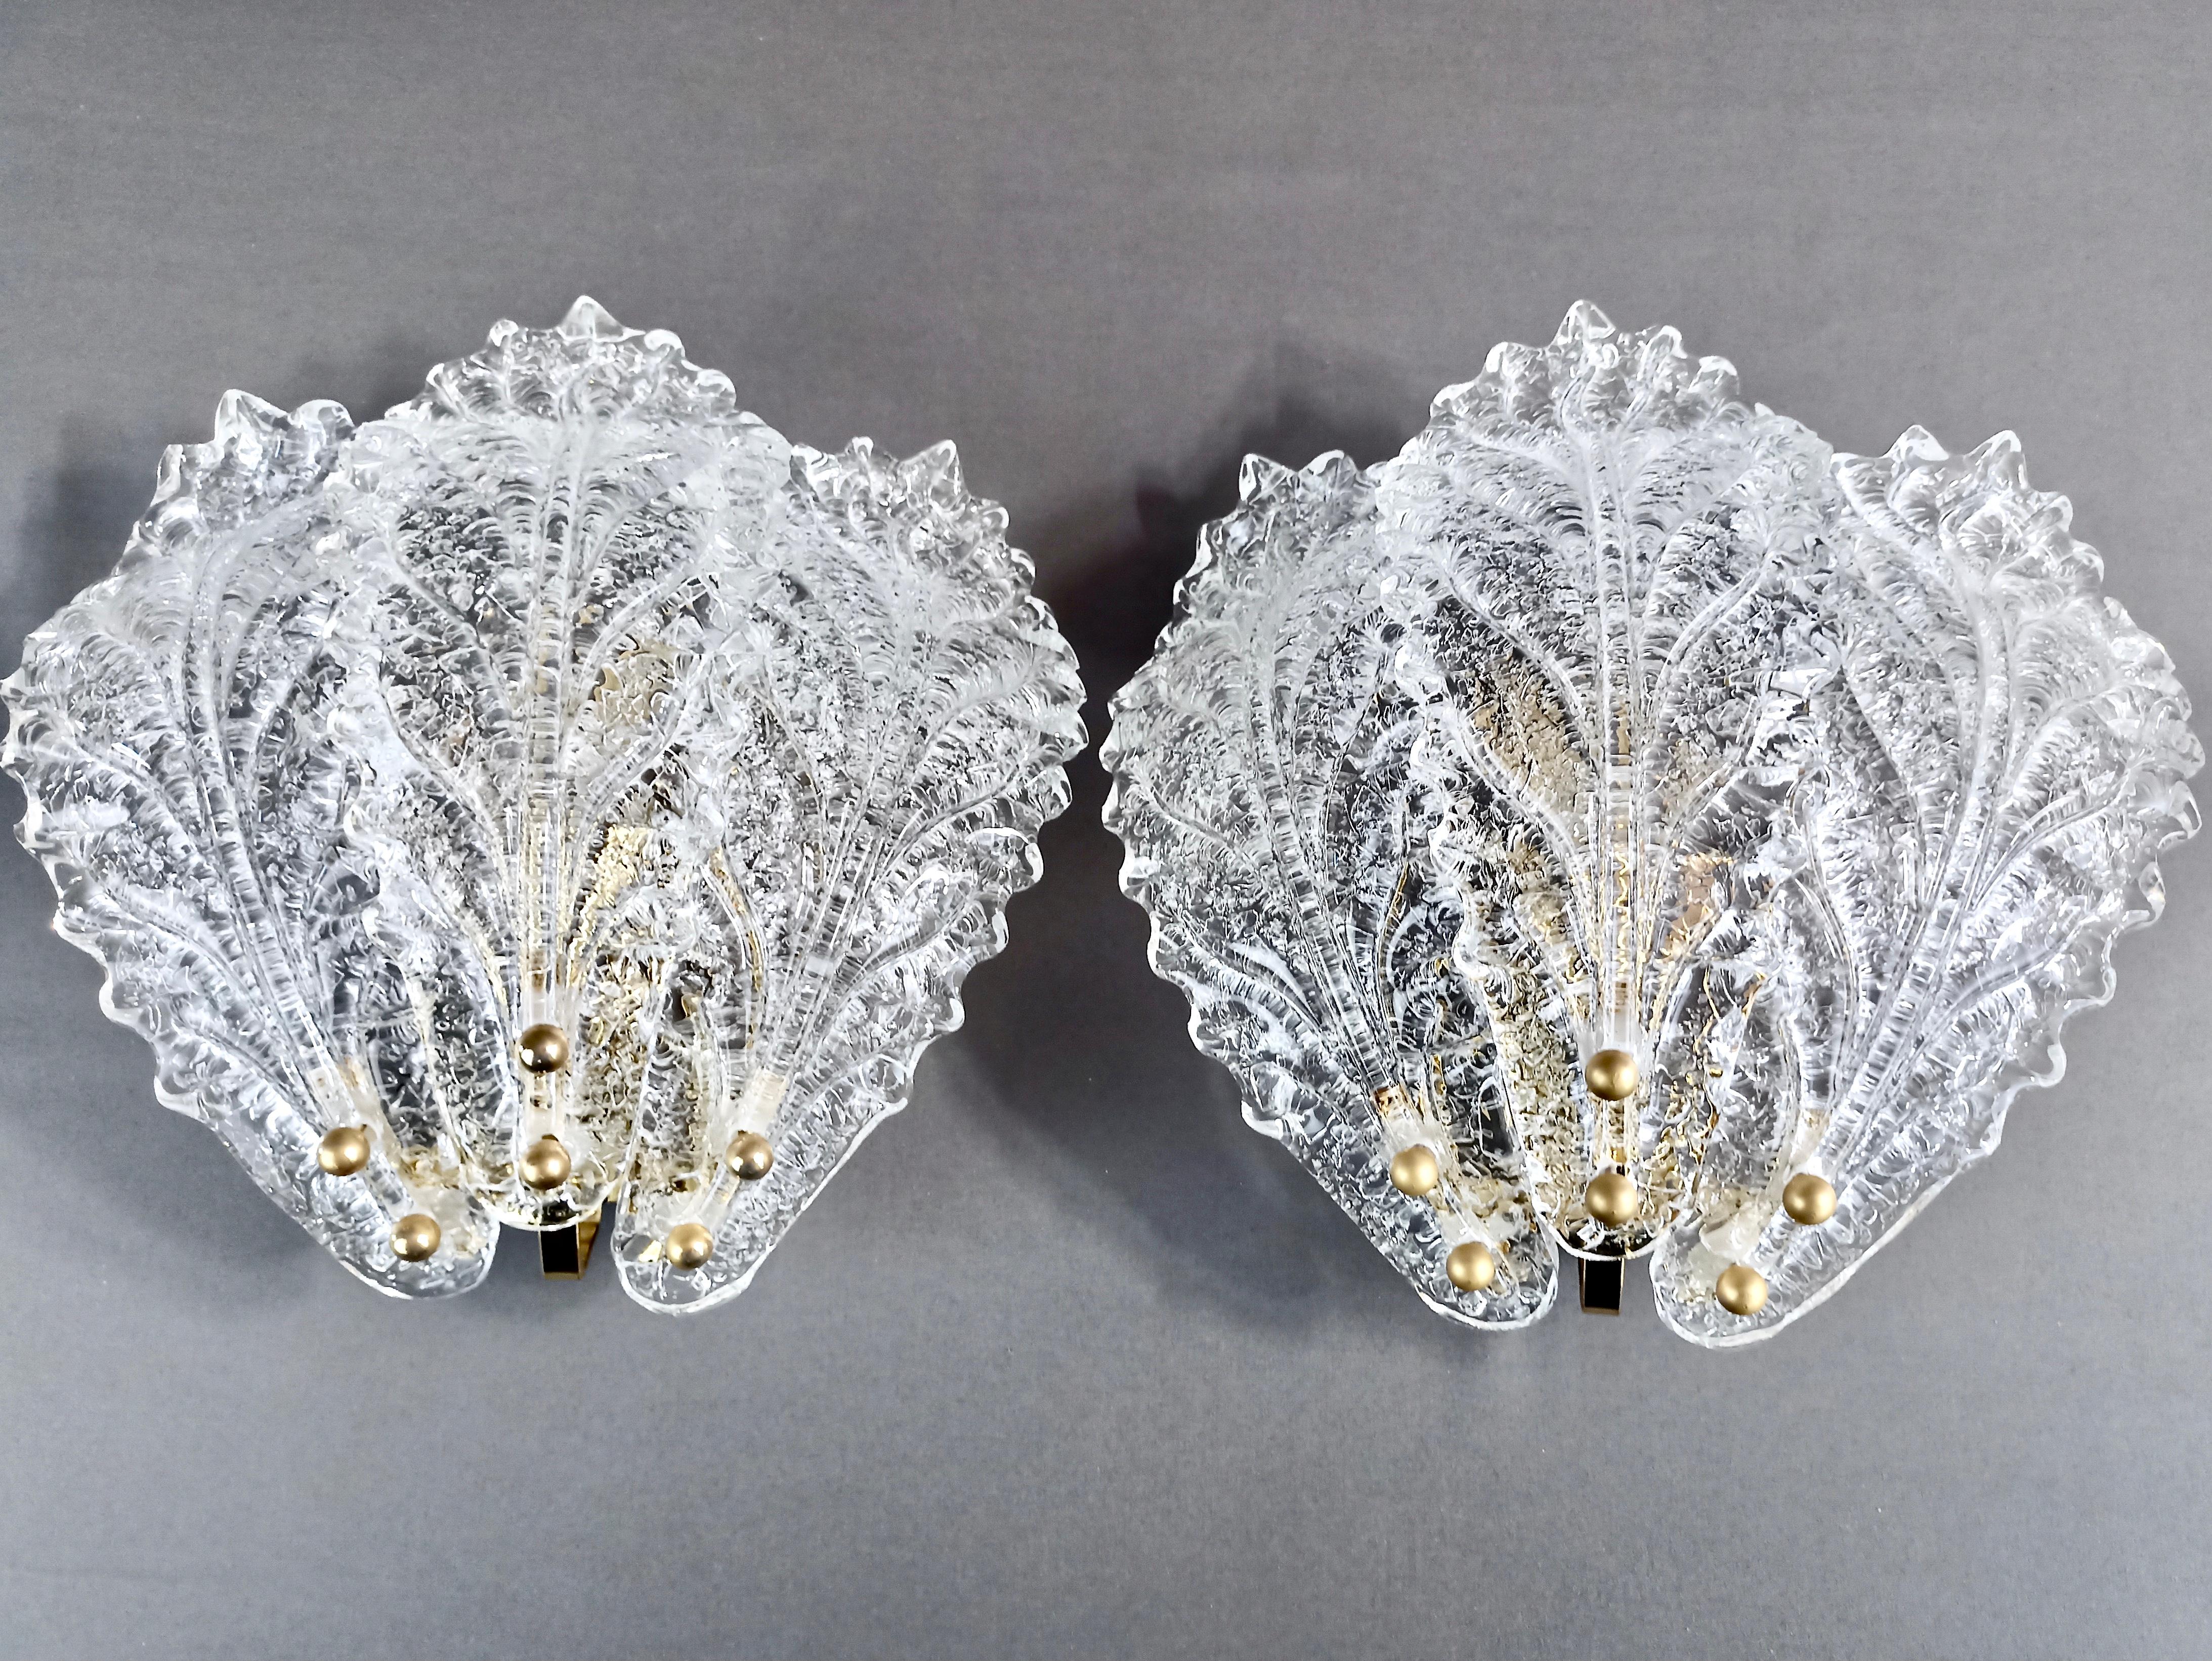 Faszinierendes Paar Murano-Kunstglas-Leuchter aus den 1990er Jahren in der klassischen venezianischen Graniglia-Ausführung. 
Jede Leuchte besteht aus drei blattförmigen Lampenschirmen aus klarem Glas und bietet einen atemberaubenden Lichteffekt, der